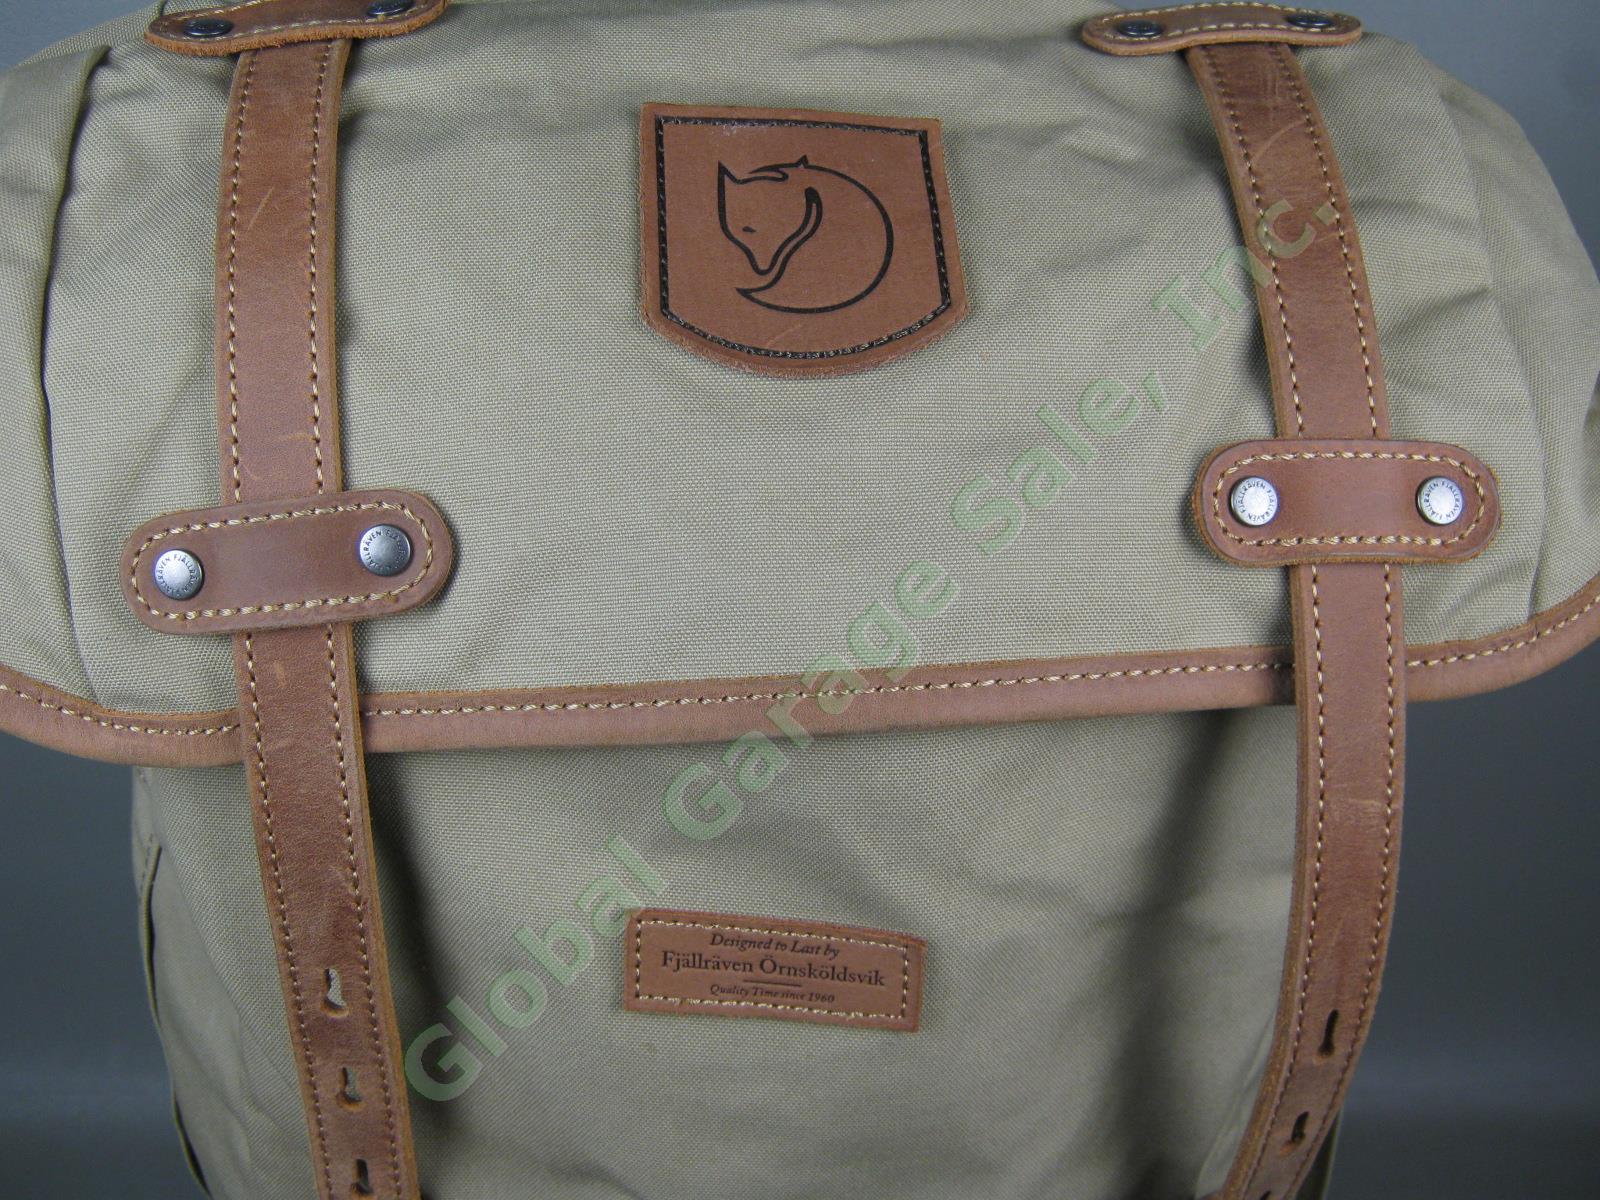 Fjallraven Rucksack No 21 Large Daypack Backpack 24206 Sand Color G-1000 VG COND 1